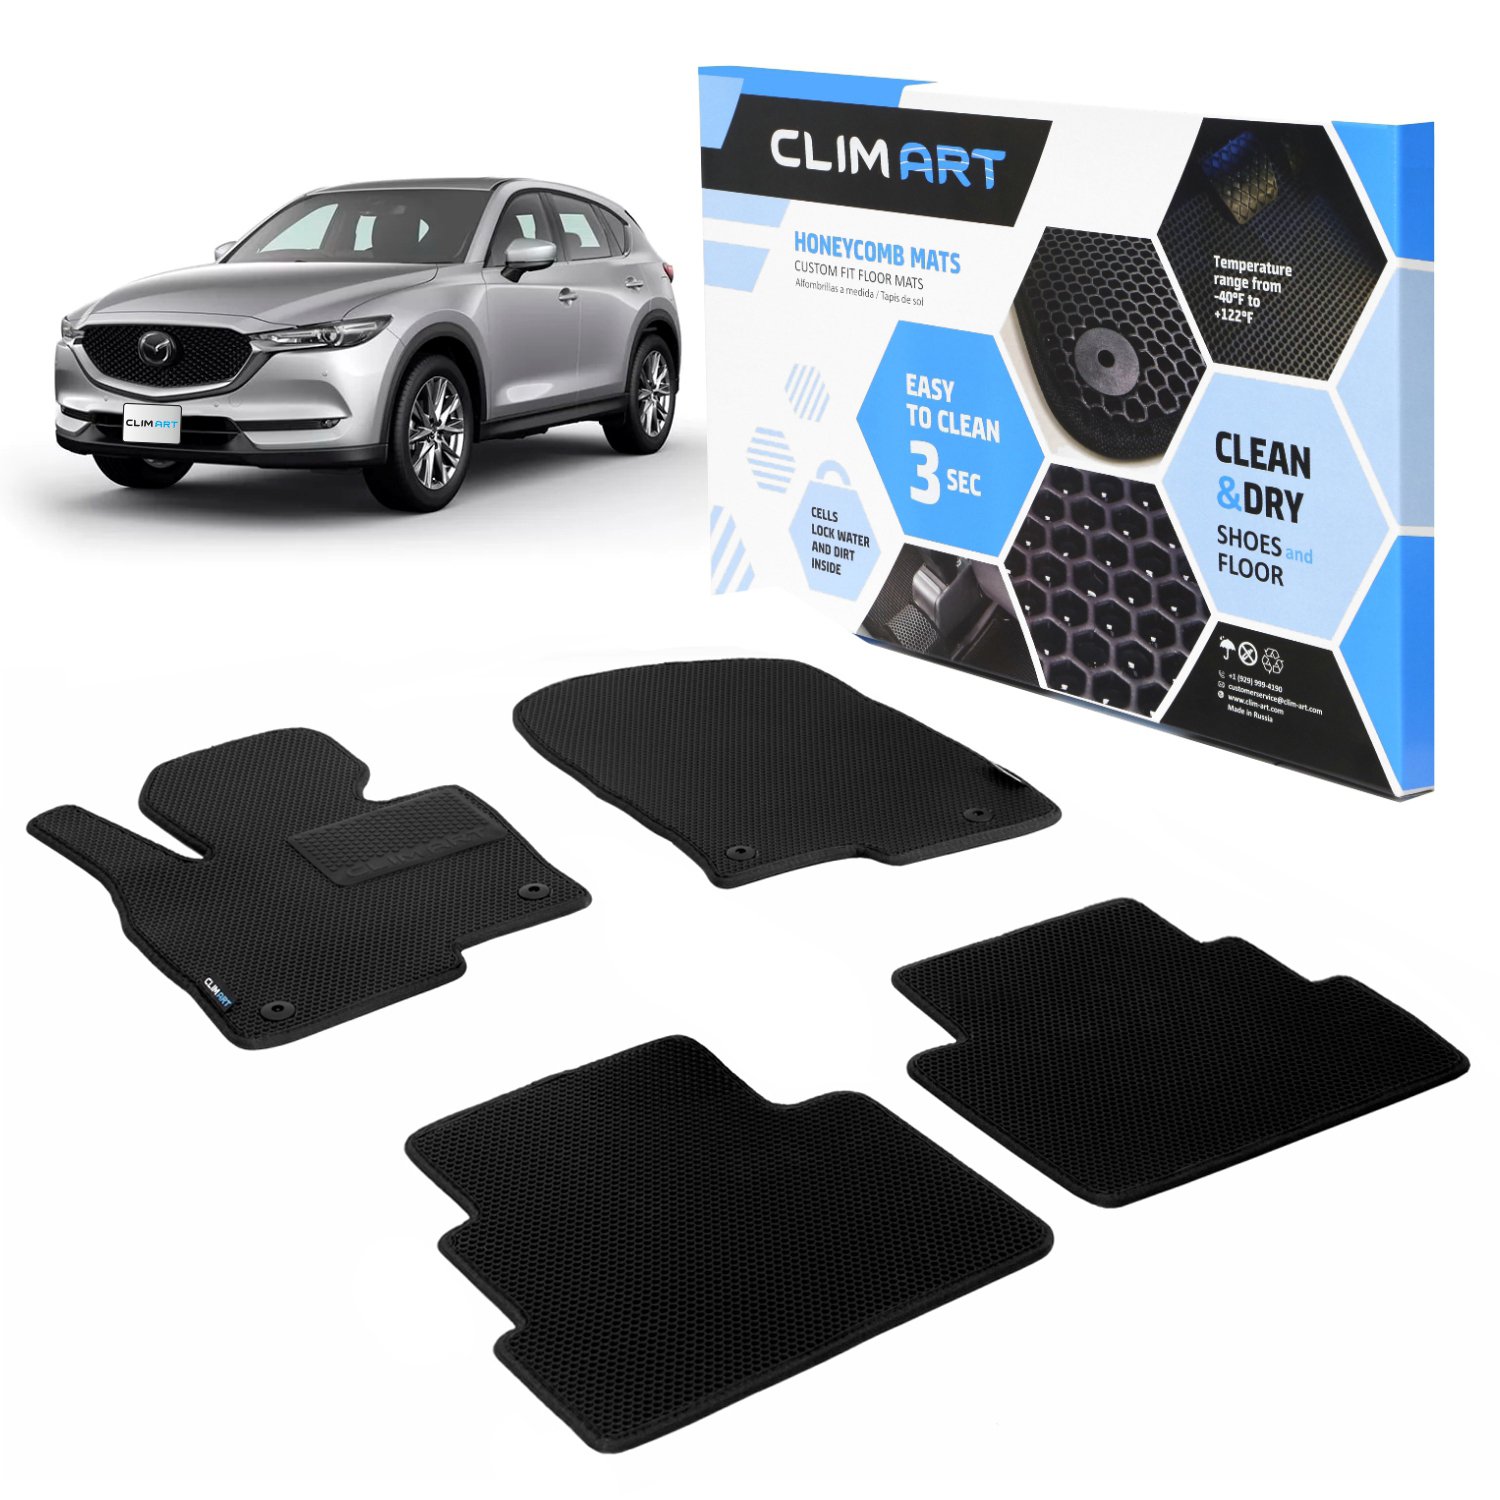 CLIM ART Honeycomb Custom Fit Floor Mats Fits Select Mazda CX-5